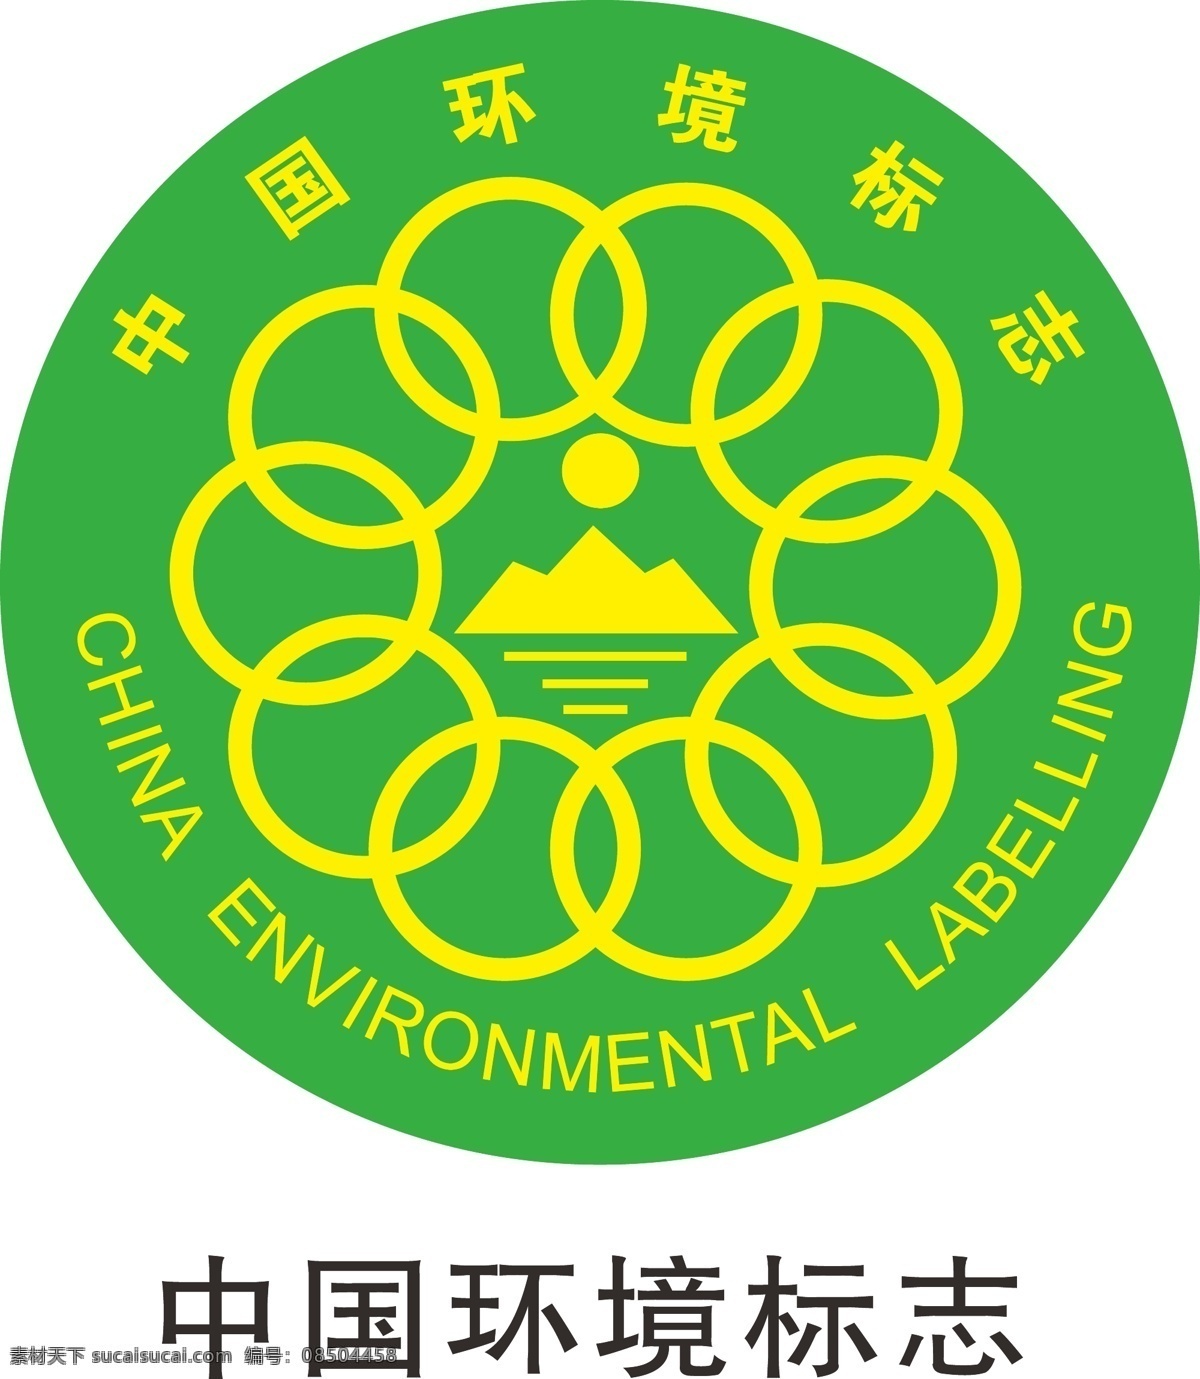 中国环境标志 中国环境 logo 标志 矢量